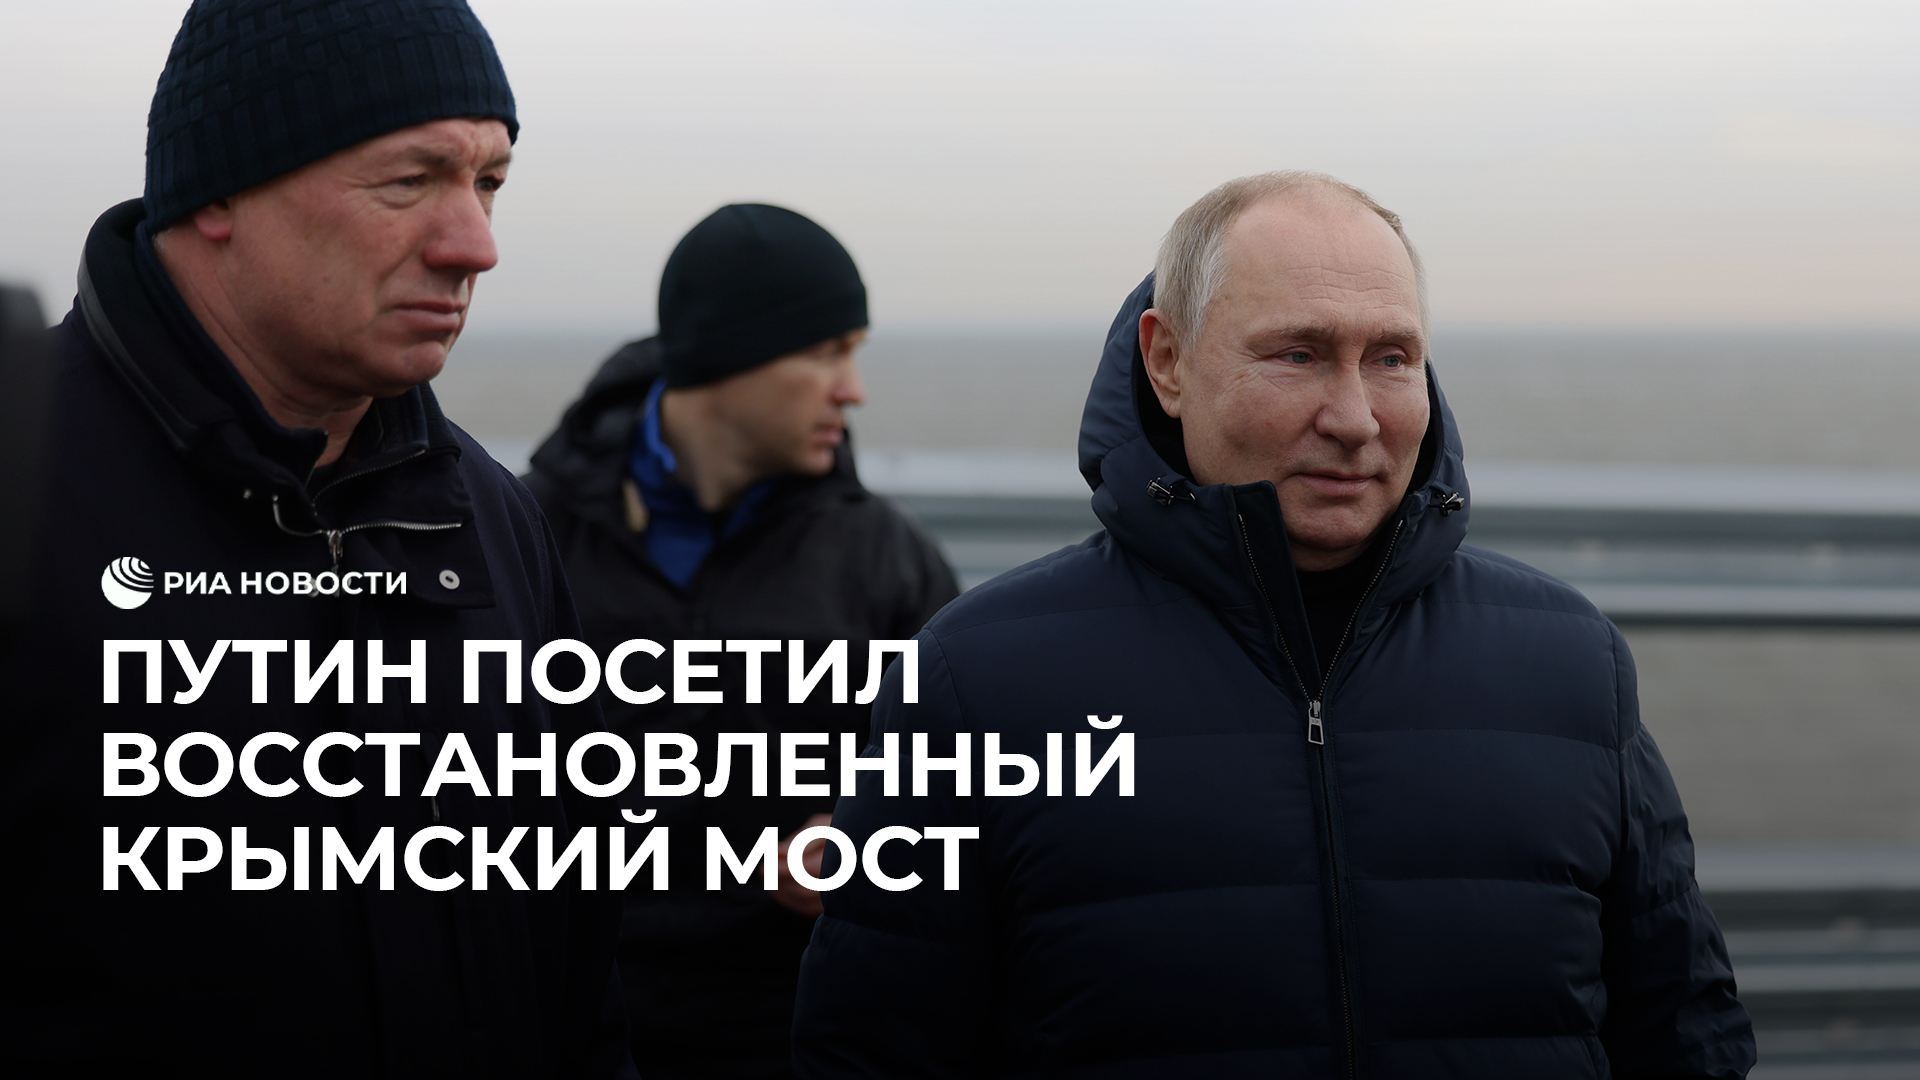 Путин посетил восстановленный Крымский мост